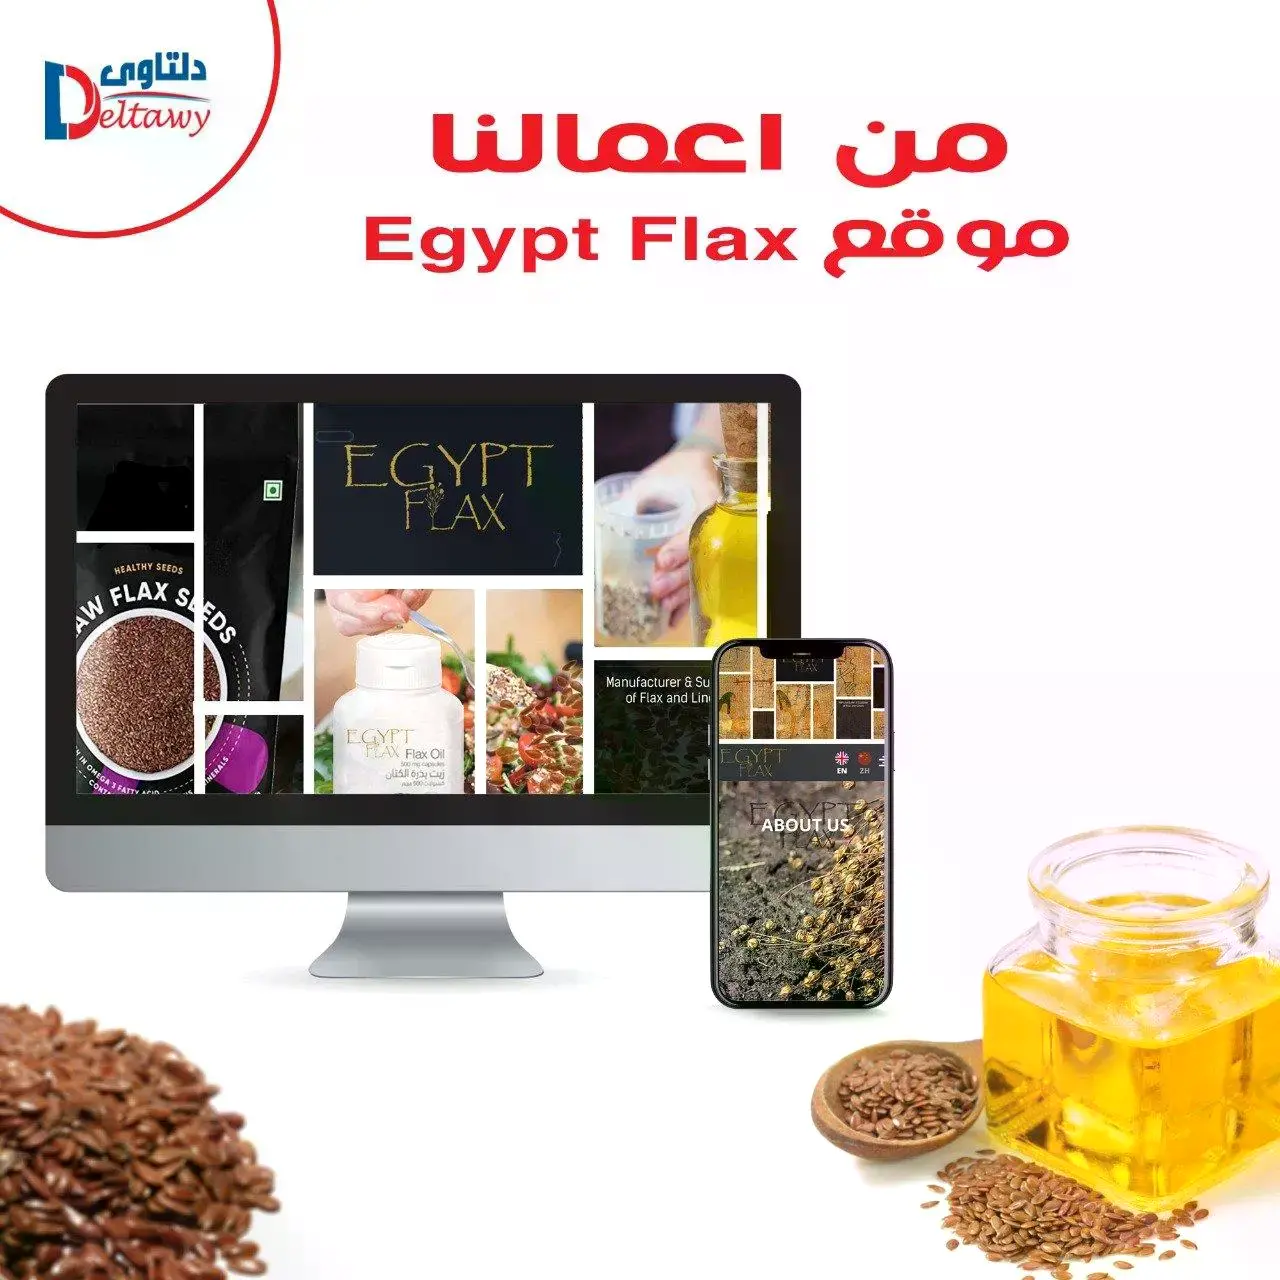 Egypt_Flax